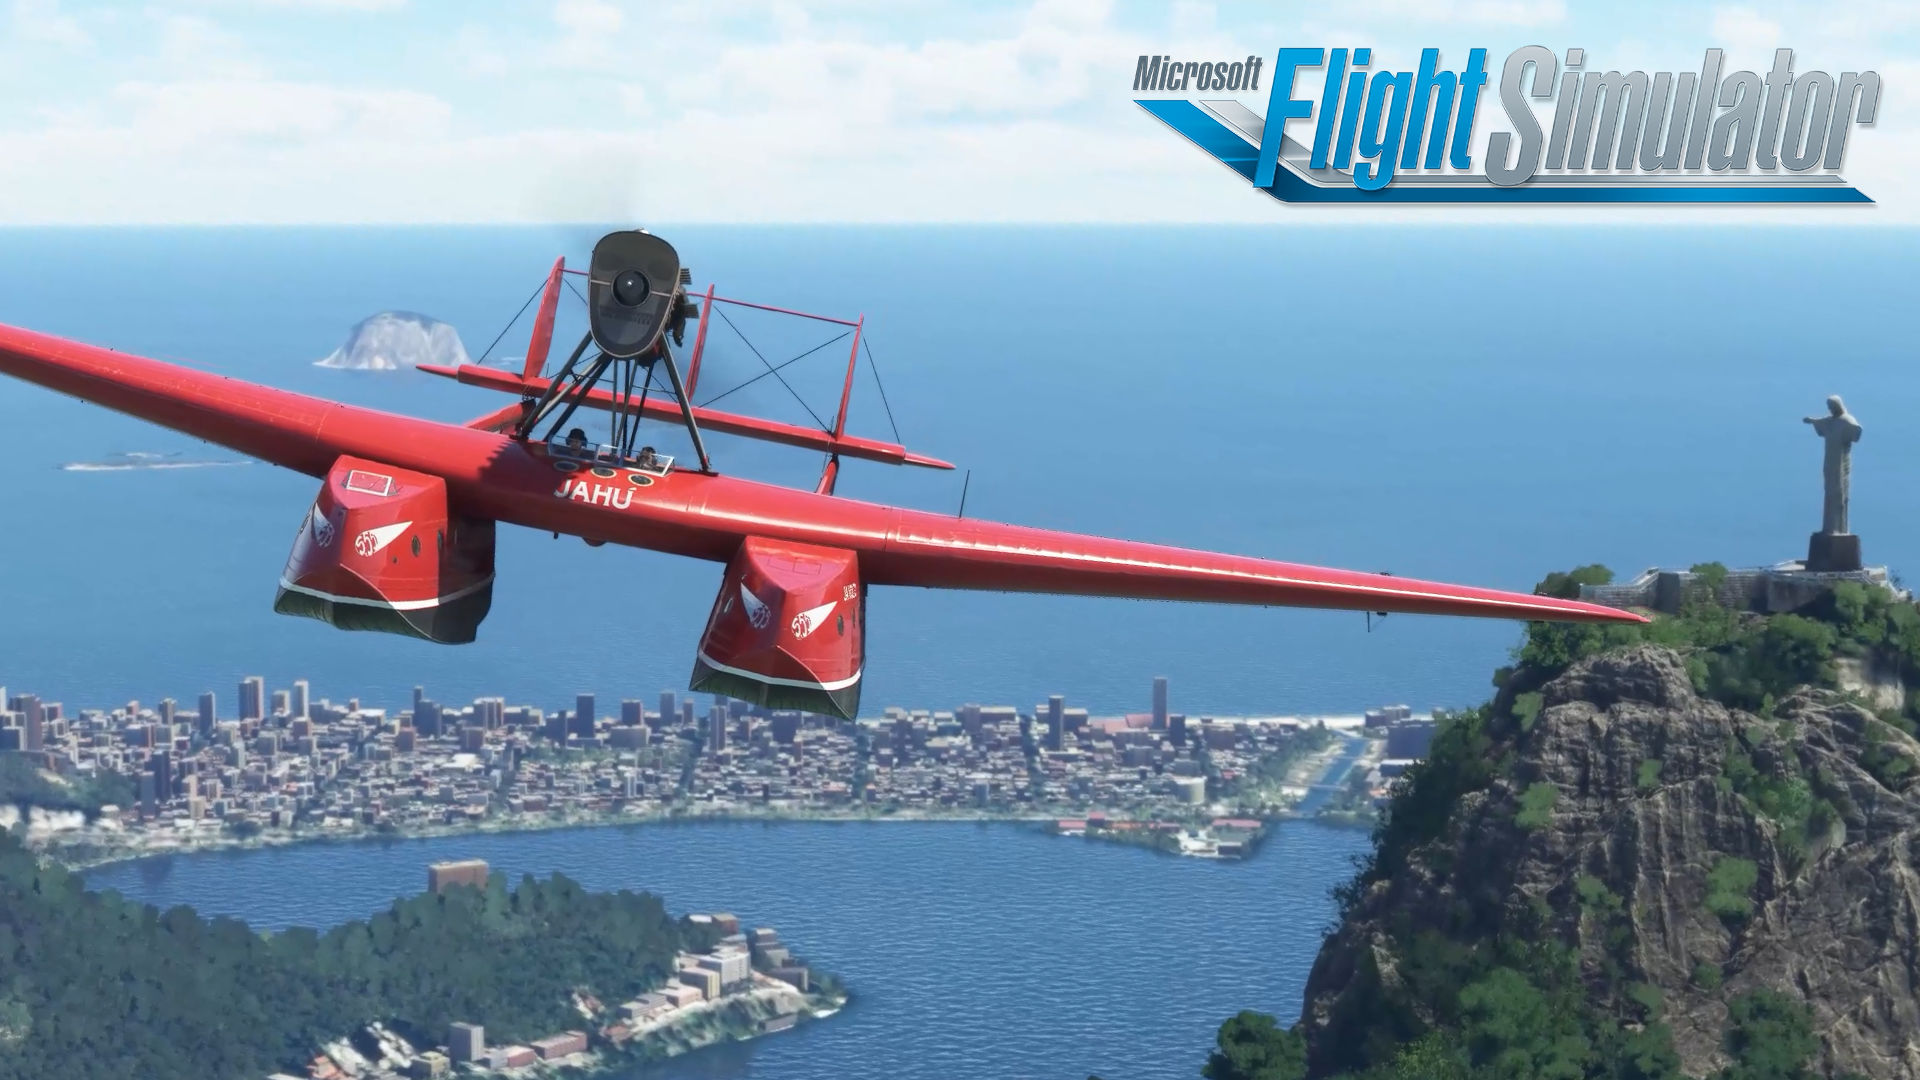 Video For Der Microsoft Flight Simulator präsentiert mit der S55 Savoia Marchetti ein neues Flugzeug in Local Legends 4